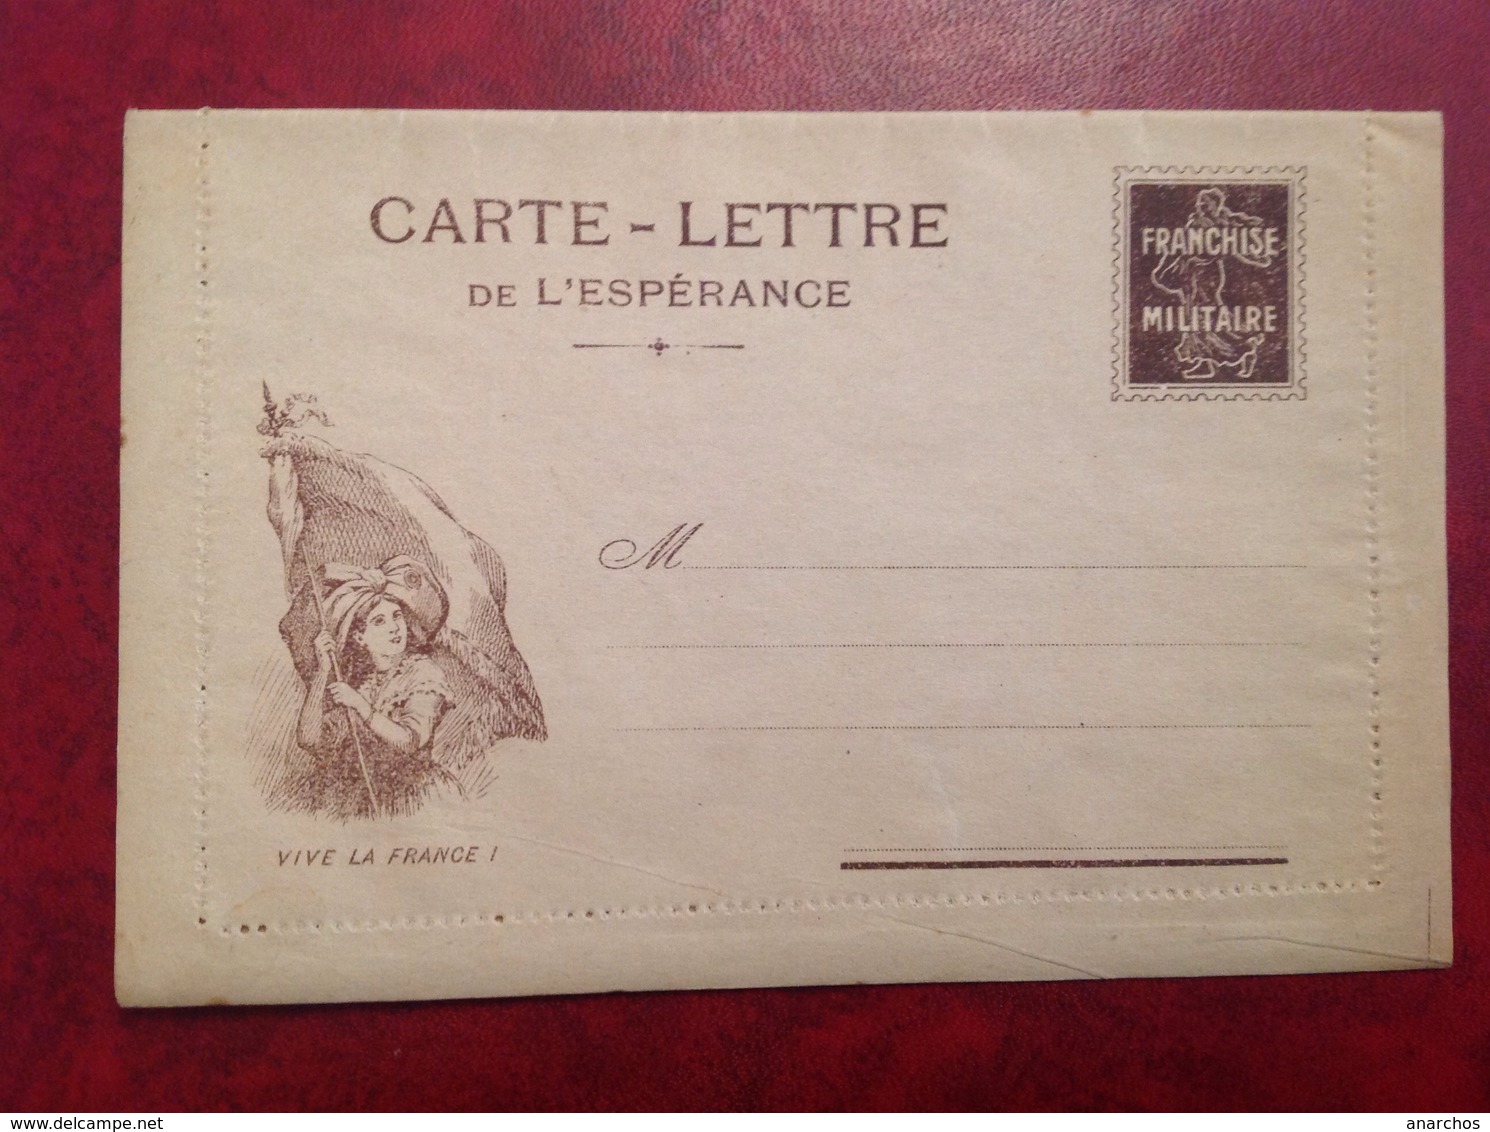 Carte Lettre De L'espérance Franchise Militaire - Lettres & Documents